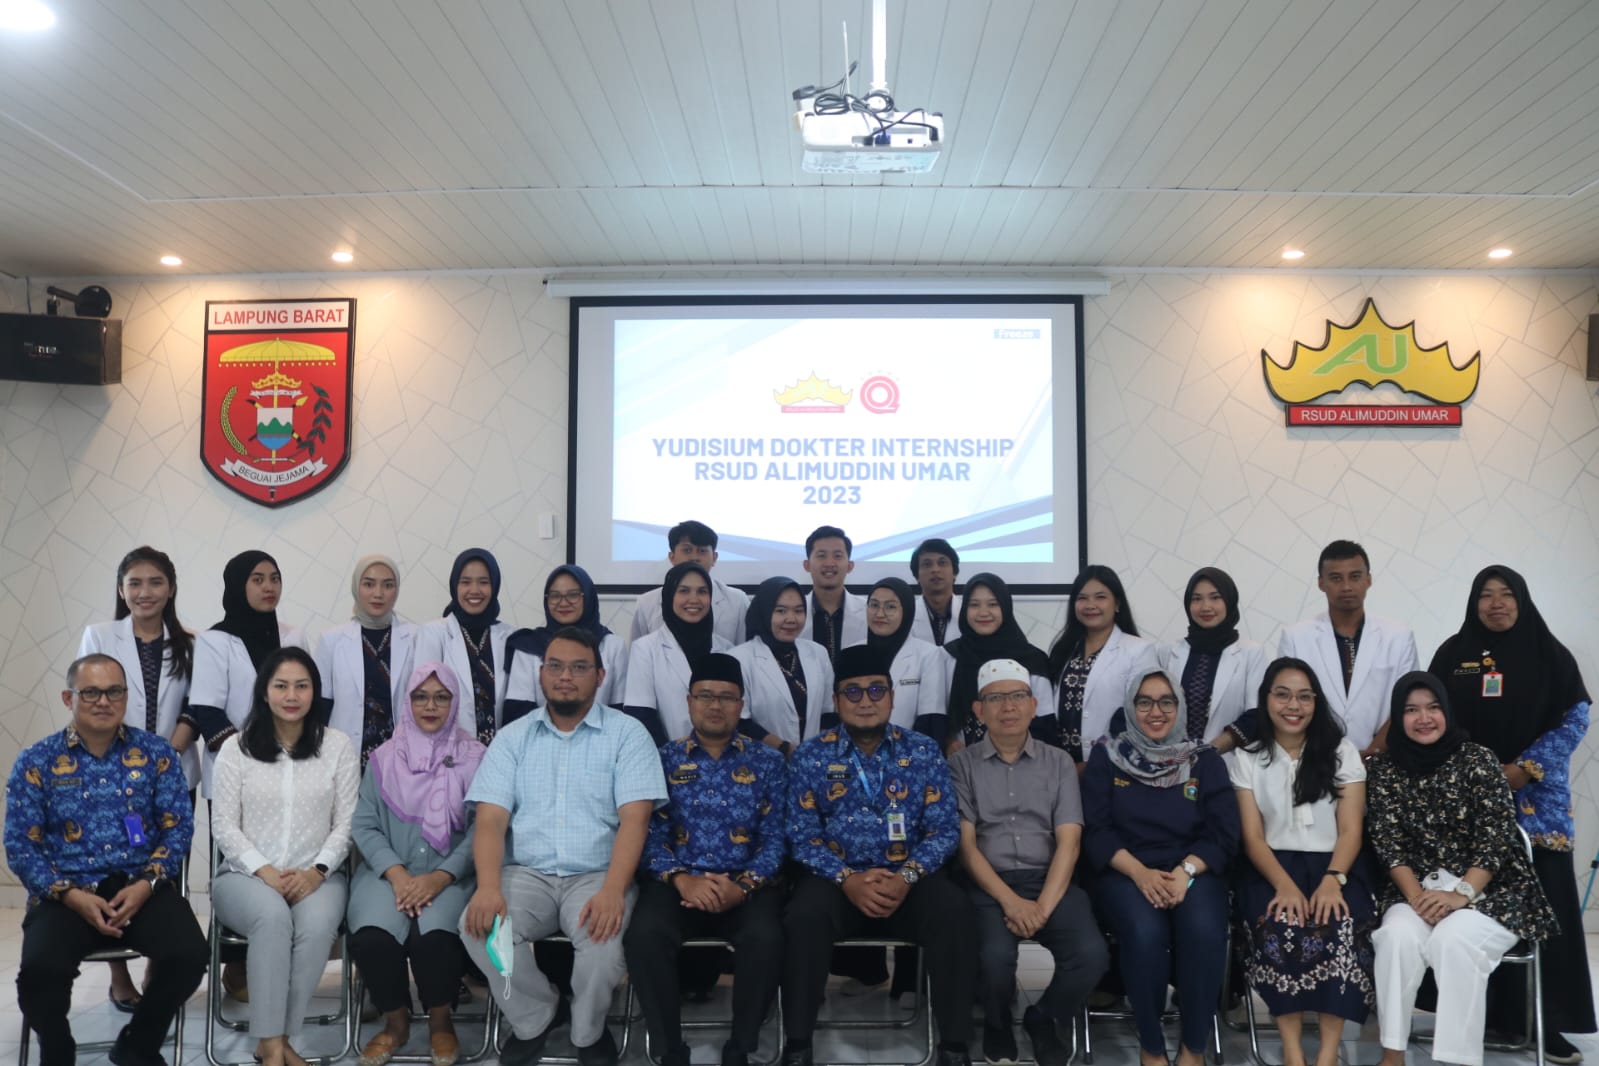 Setelah Setahun Bertugas, 16 Dokter Internsip Wahana Faskes Lampung Barat Yudisium 